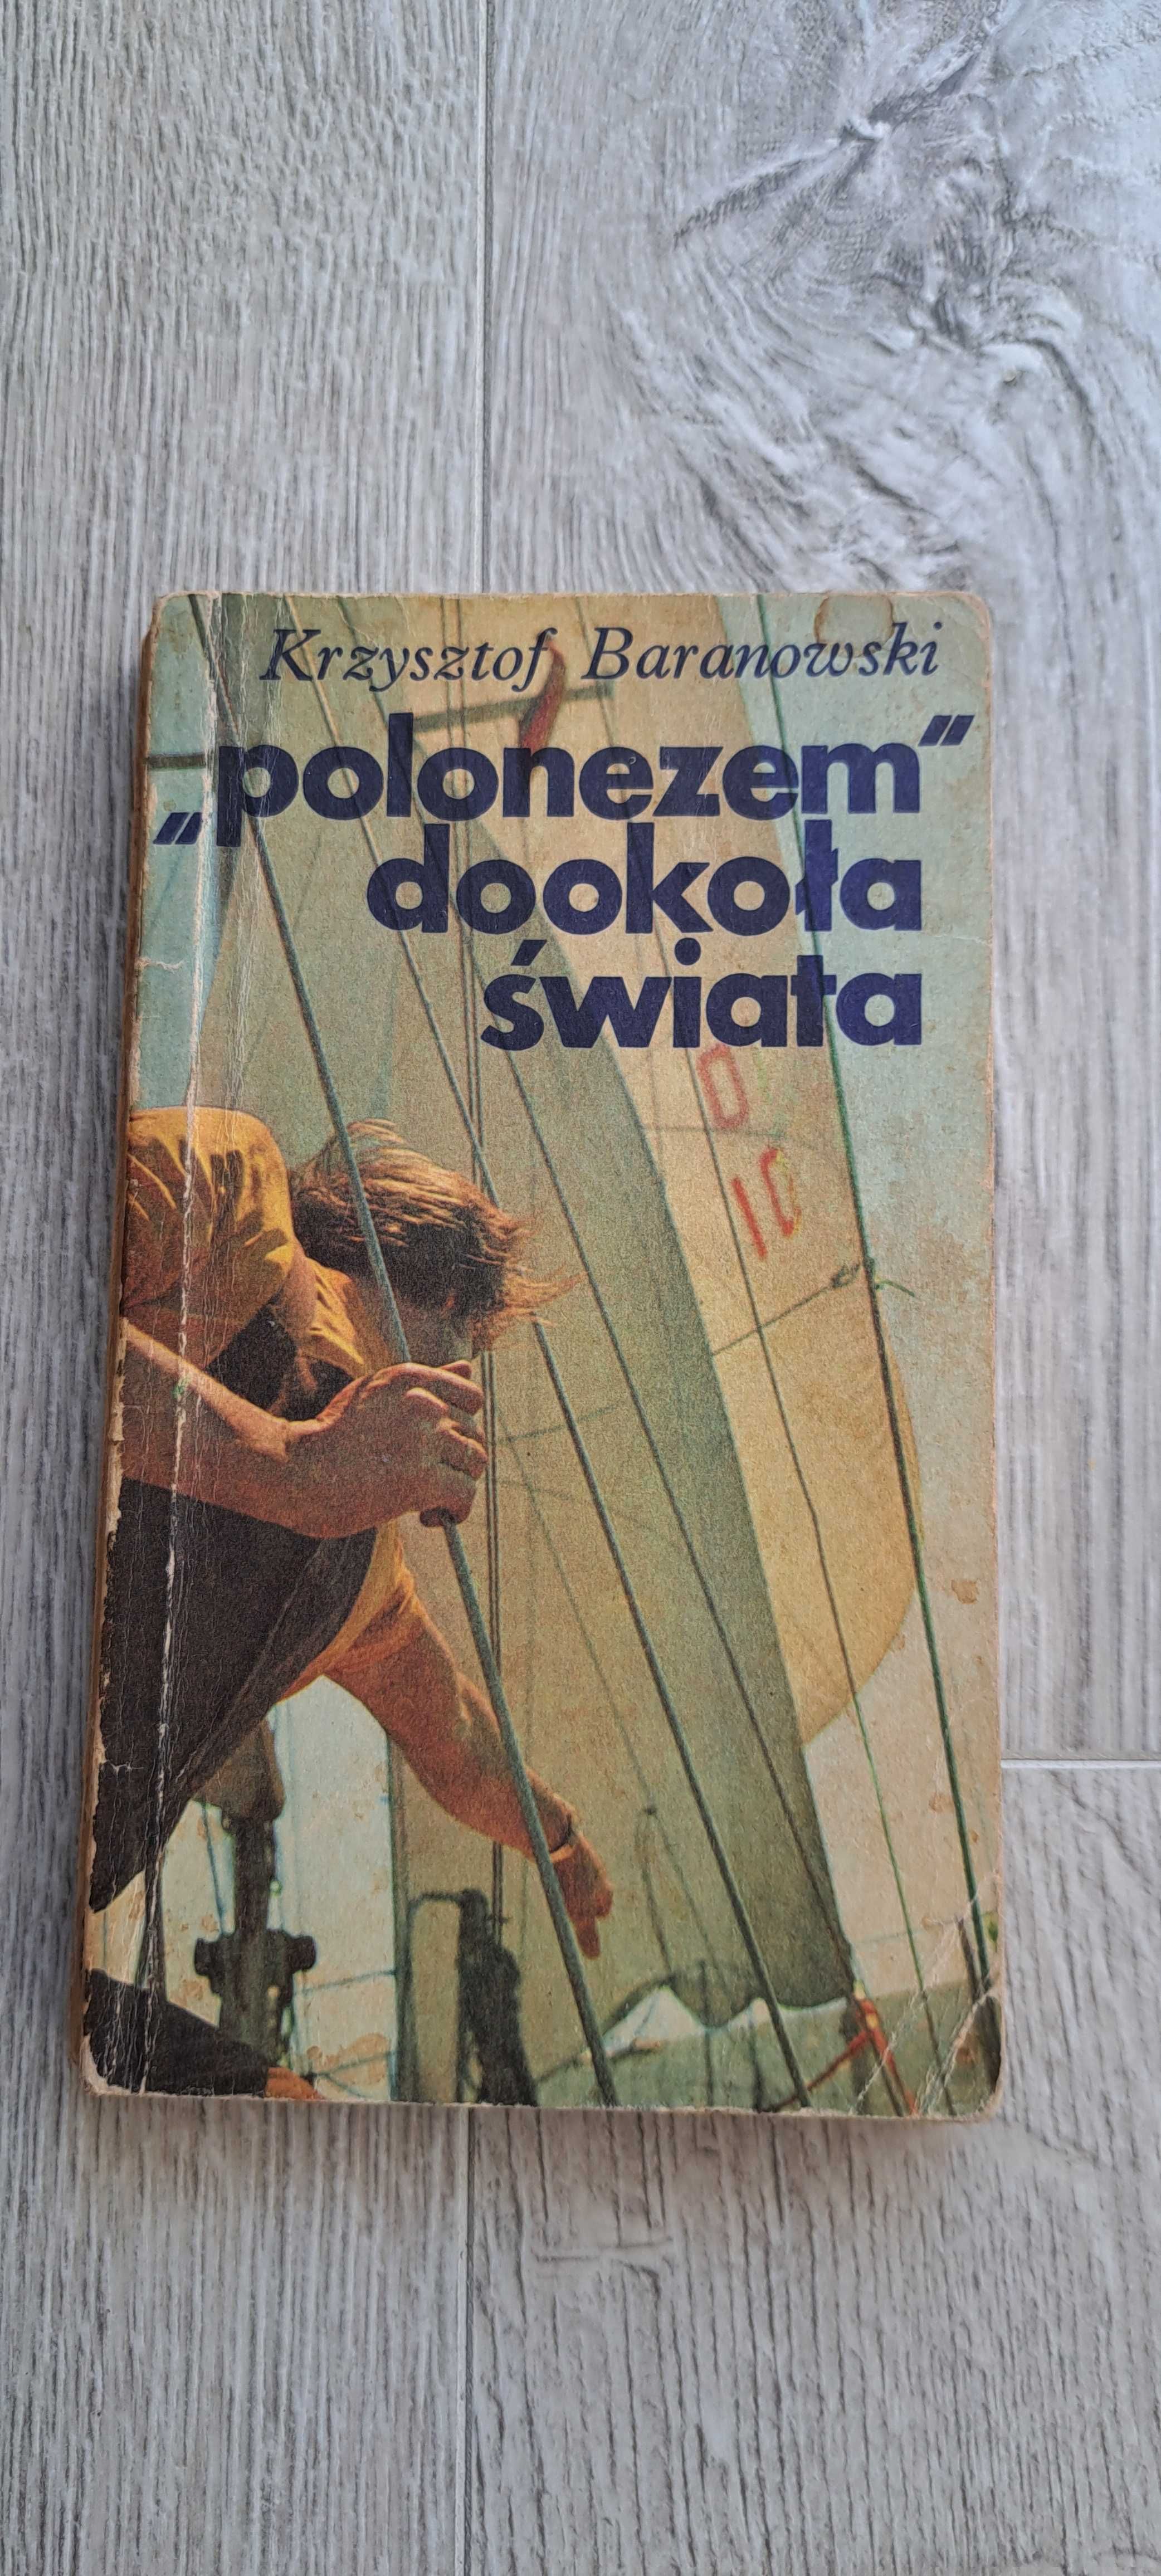 Książka Krzysztof Baranowski Polonezem dookoła świata